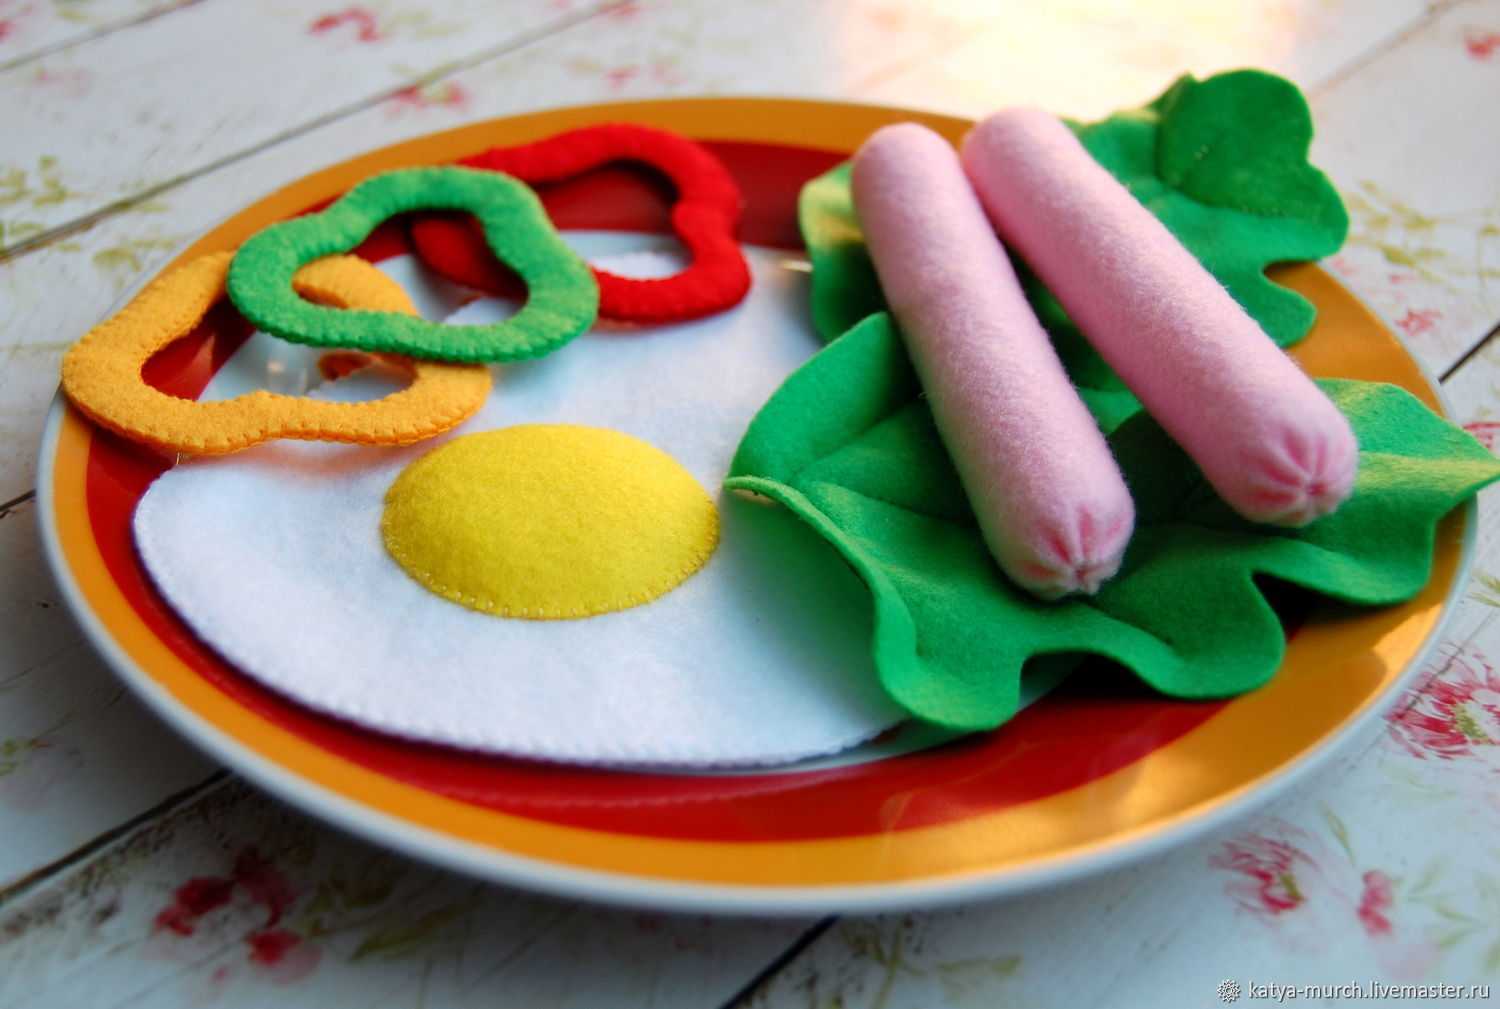 В статье приводится пошаговый мастер класс по изготовлению игрушечной еды своими руками из соленого теста и фетра